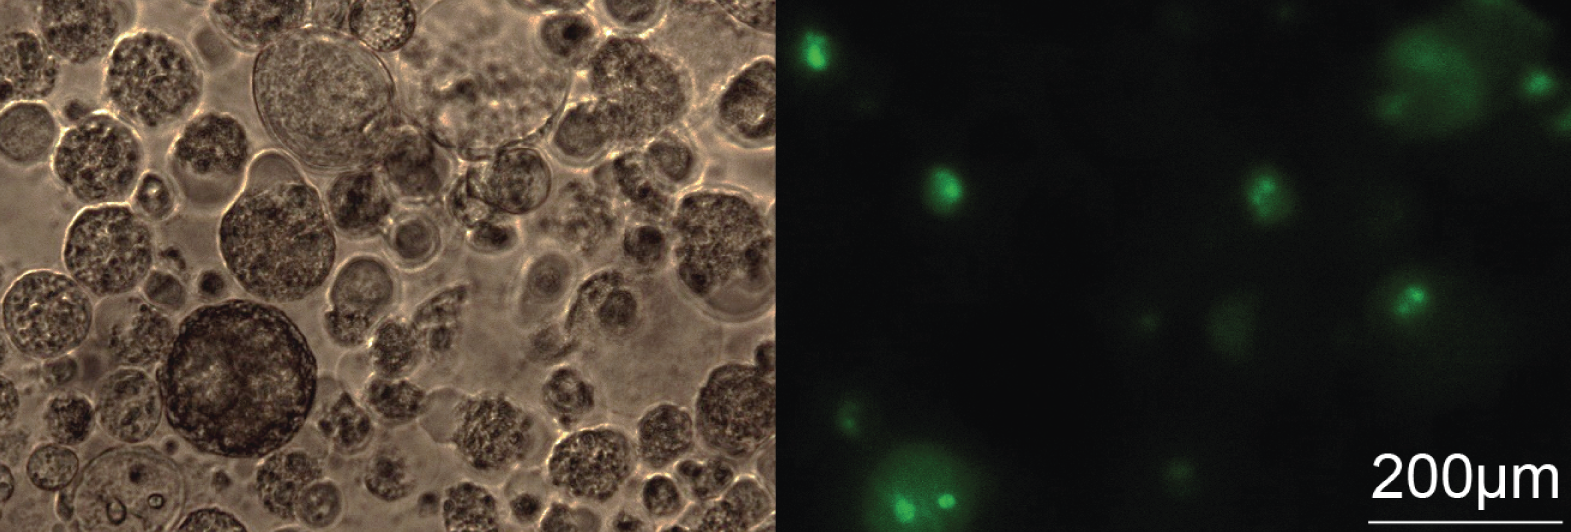 Mikroskopiebilder von dreidimensionalen Lungenkrebsspheroiden transfiyziert mit ASOs, welche grün fluoreszierend markiert sind.